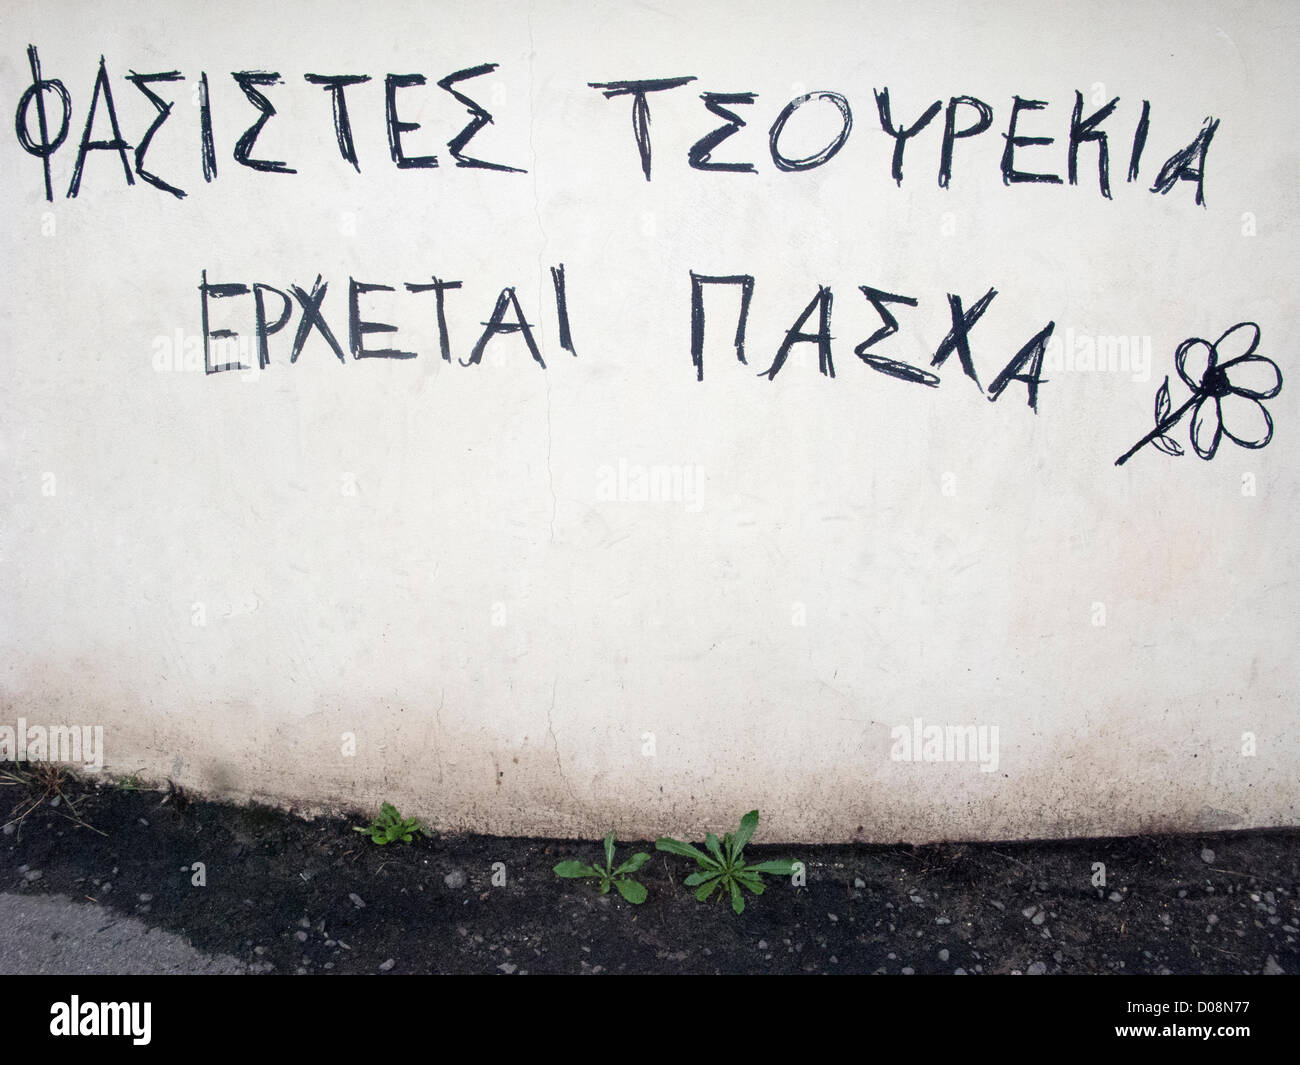 Crète, Grèce. 19 novembre 2012. Fascistes Anti Graffiti sur un mur à La Canée, Crète, Grèce. Il dit fascistes Tsourekia - ( pain de Pâques grecque ) vient....Pâques et c'est quand nous vont vous manger ! Banque D'Images